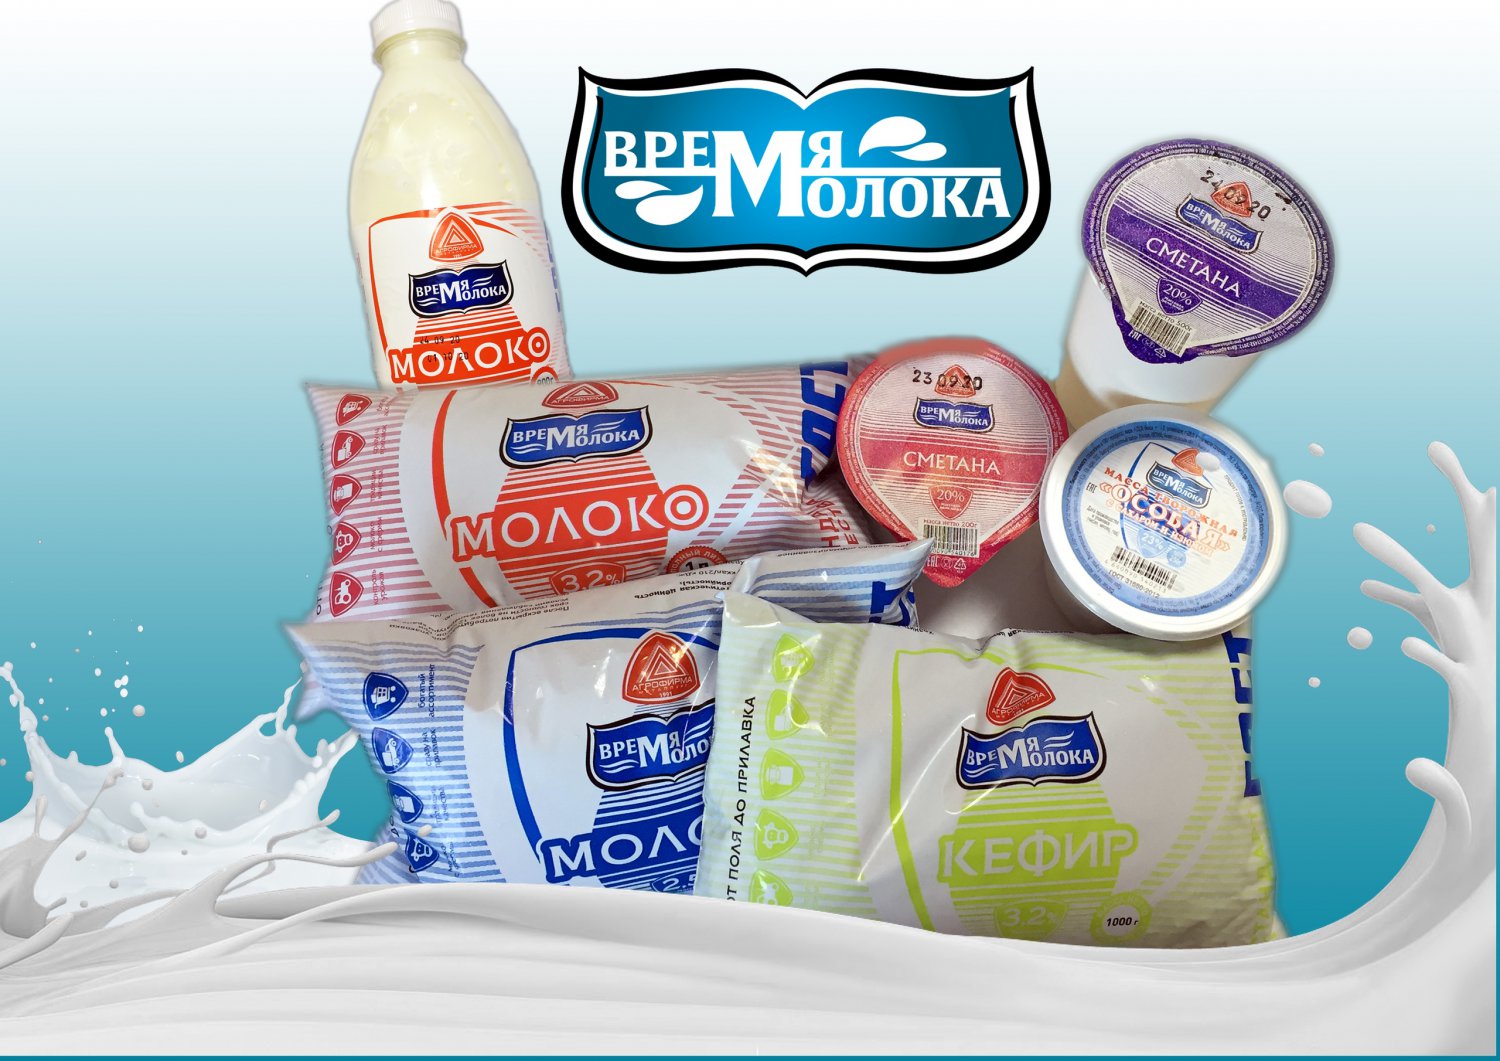 Выксунский молокозавод запустил новую торговую марку «Время Молока»